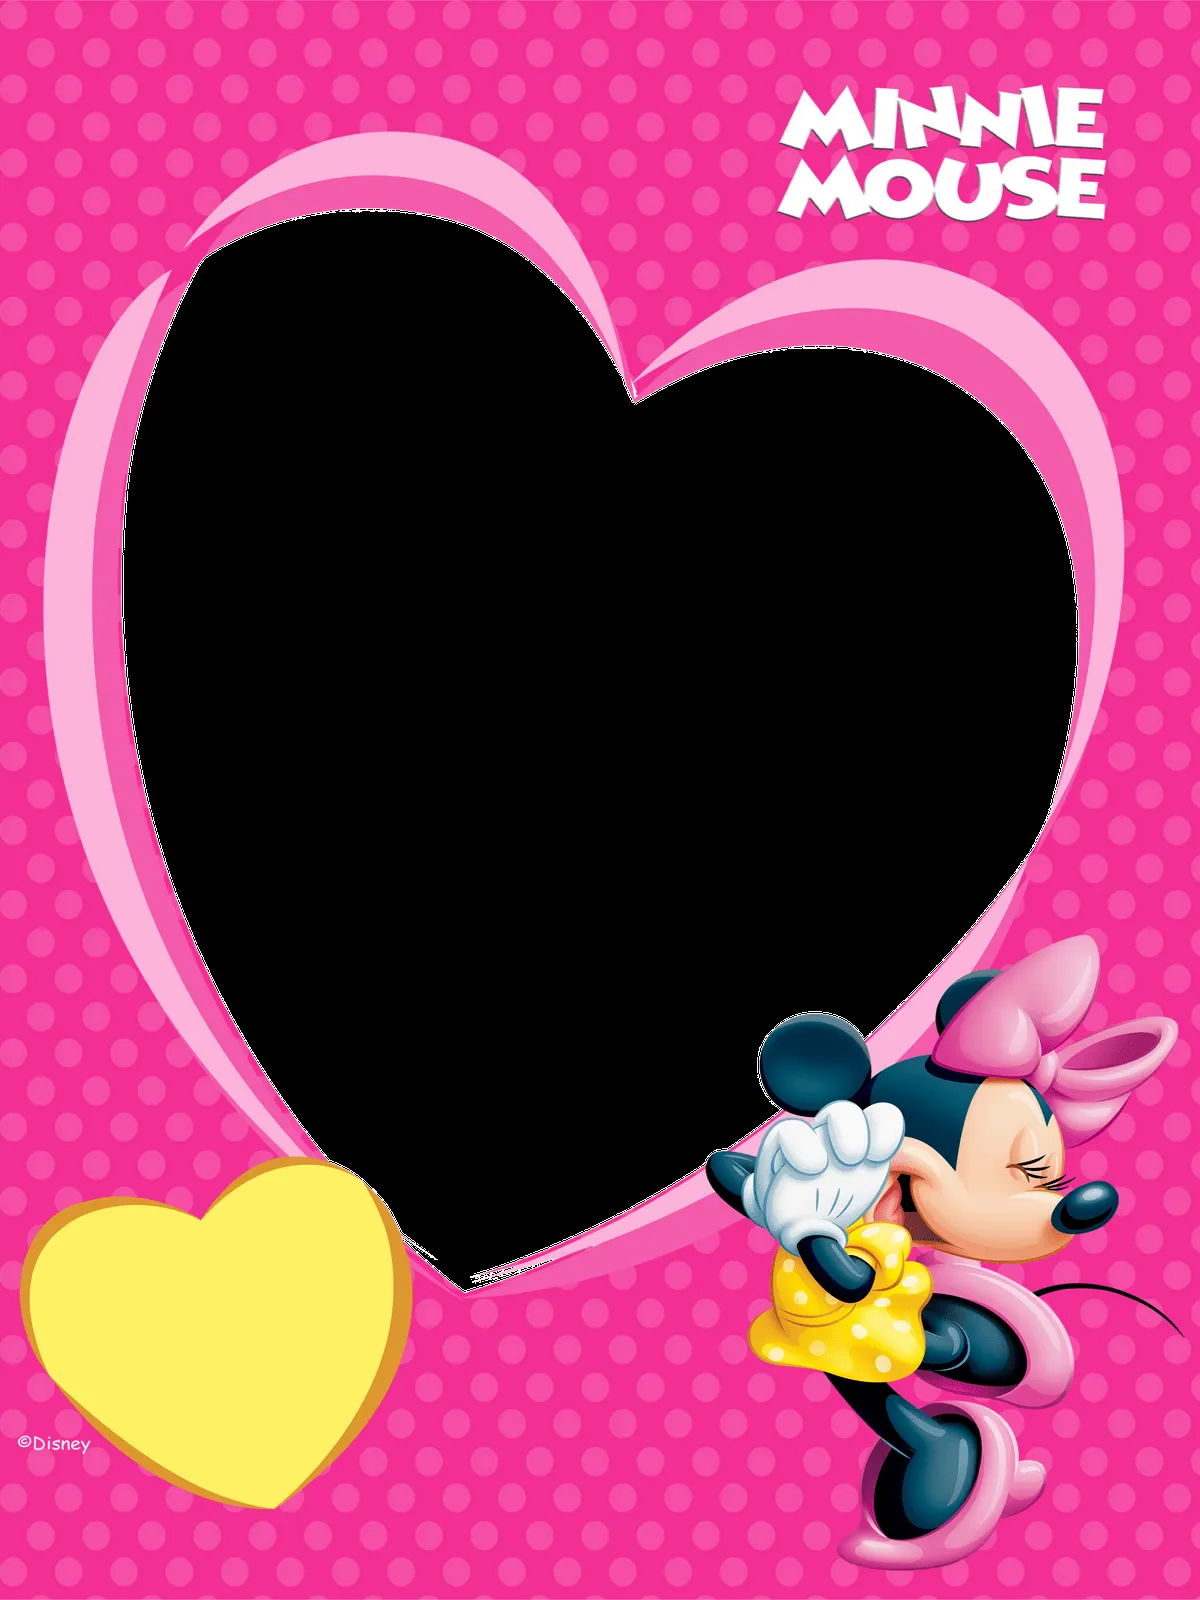 Marcos de Minnie Mouse gratis - Imagui